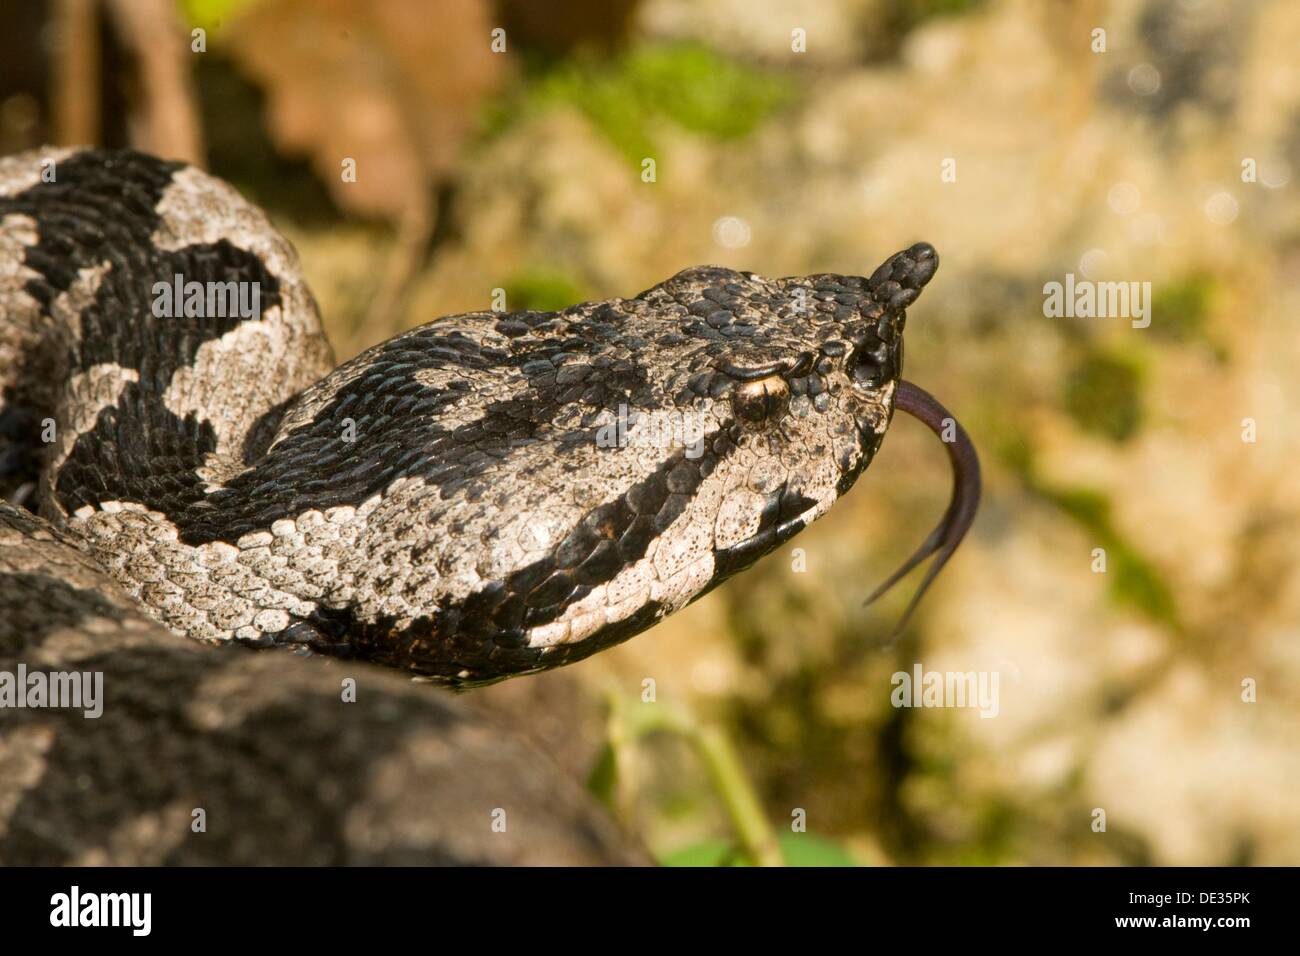 (Vipera ammodytes vipère à cornes), serpent venimeux, dardant la langue dans et hors, karst, Croatie Banque D'Images